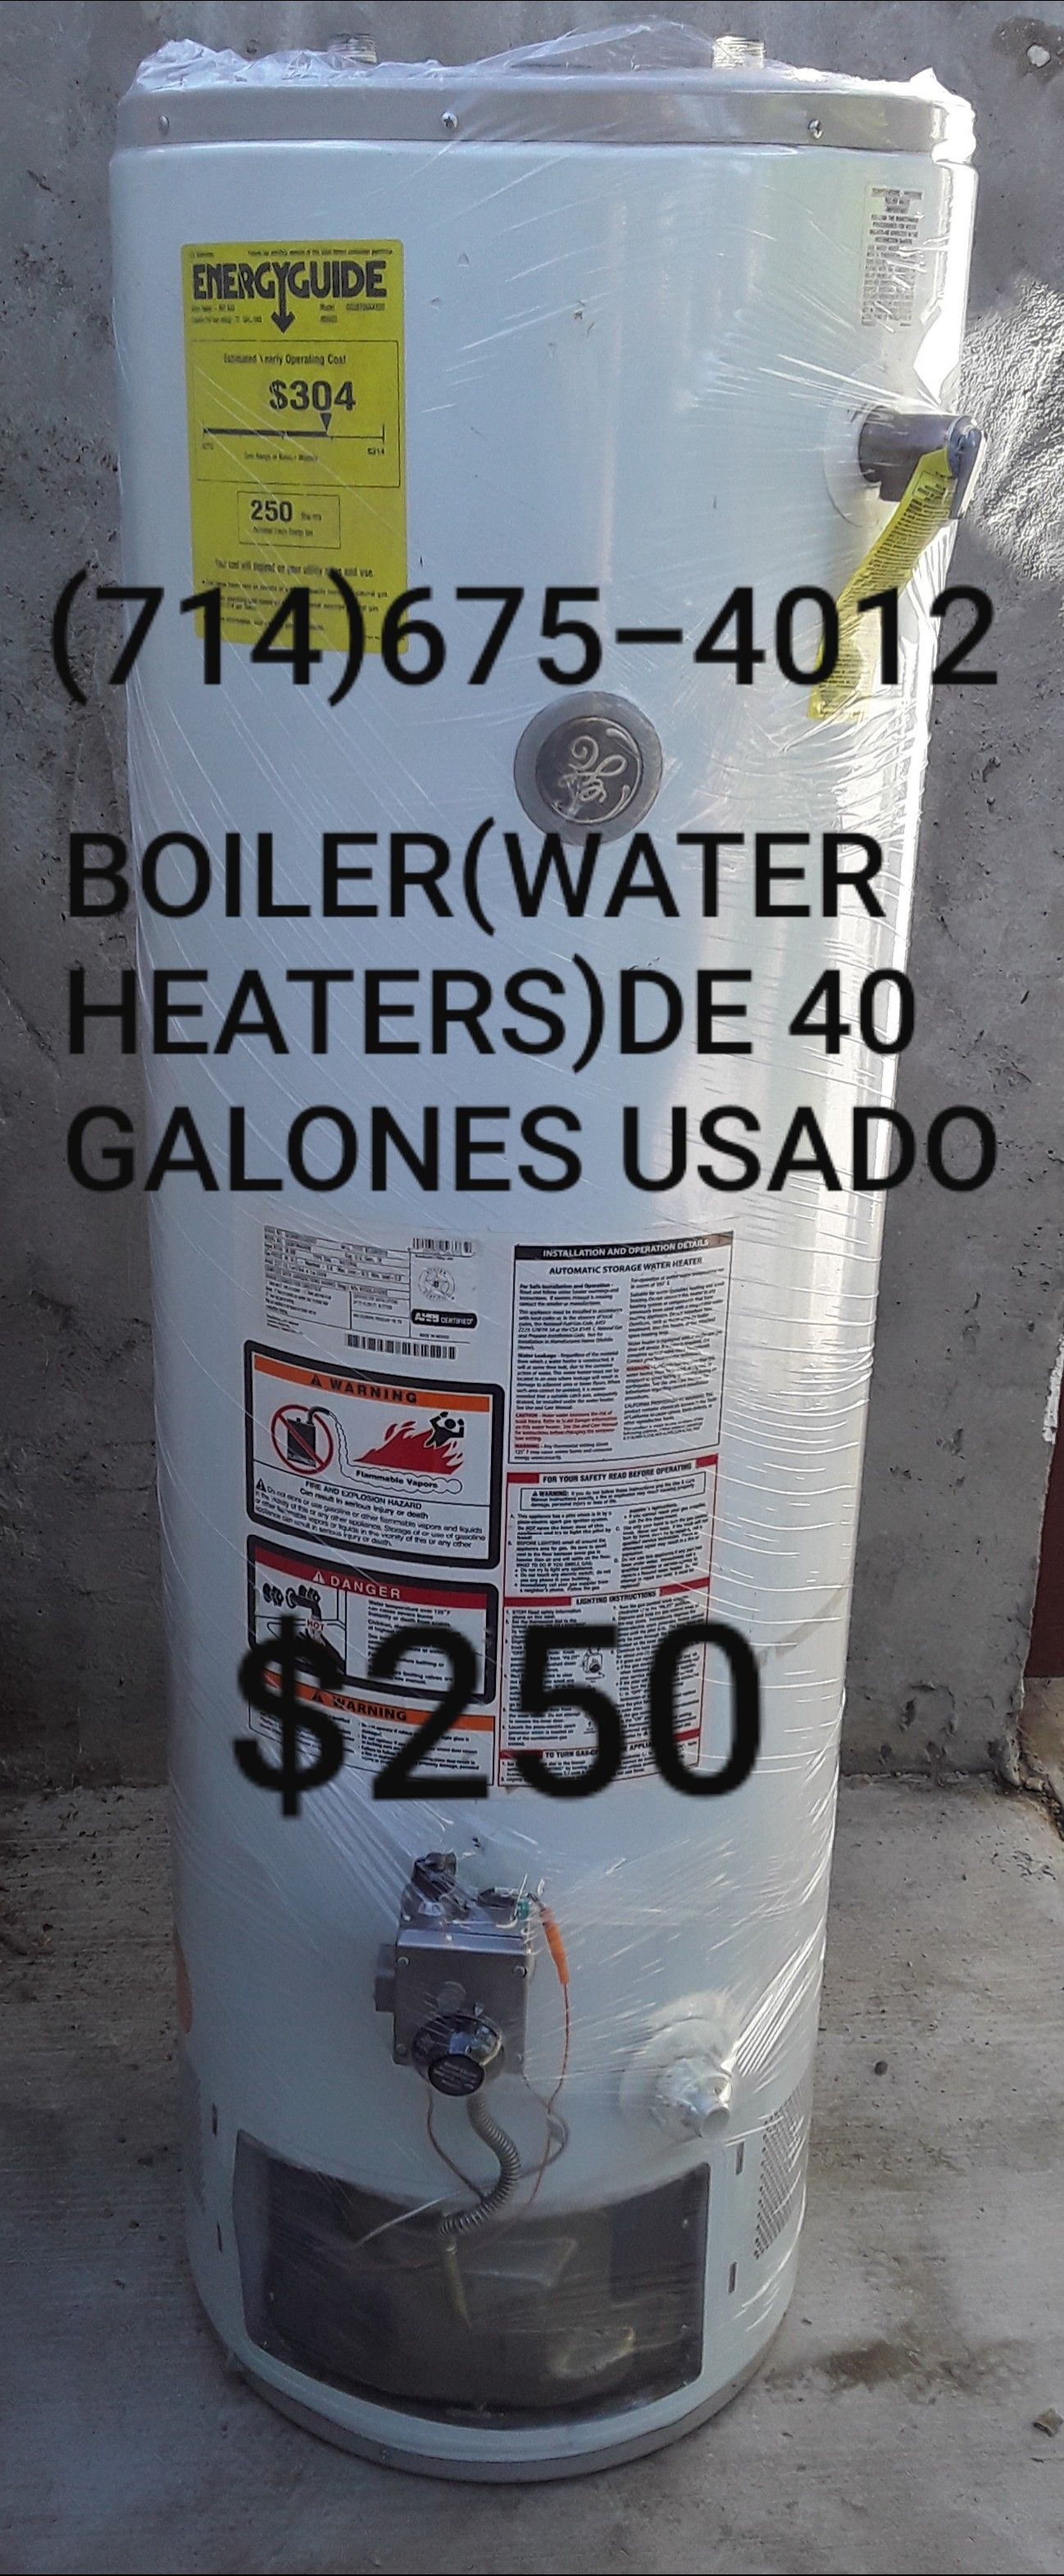 BOILER(WATER HEATERS)DE 40 GALONES USADO DE LA MARCA GENERAL ELECTRIC!!!!!!